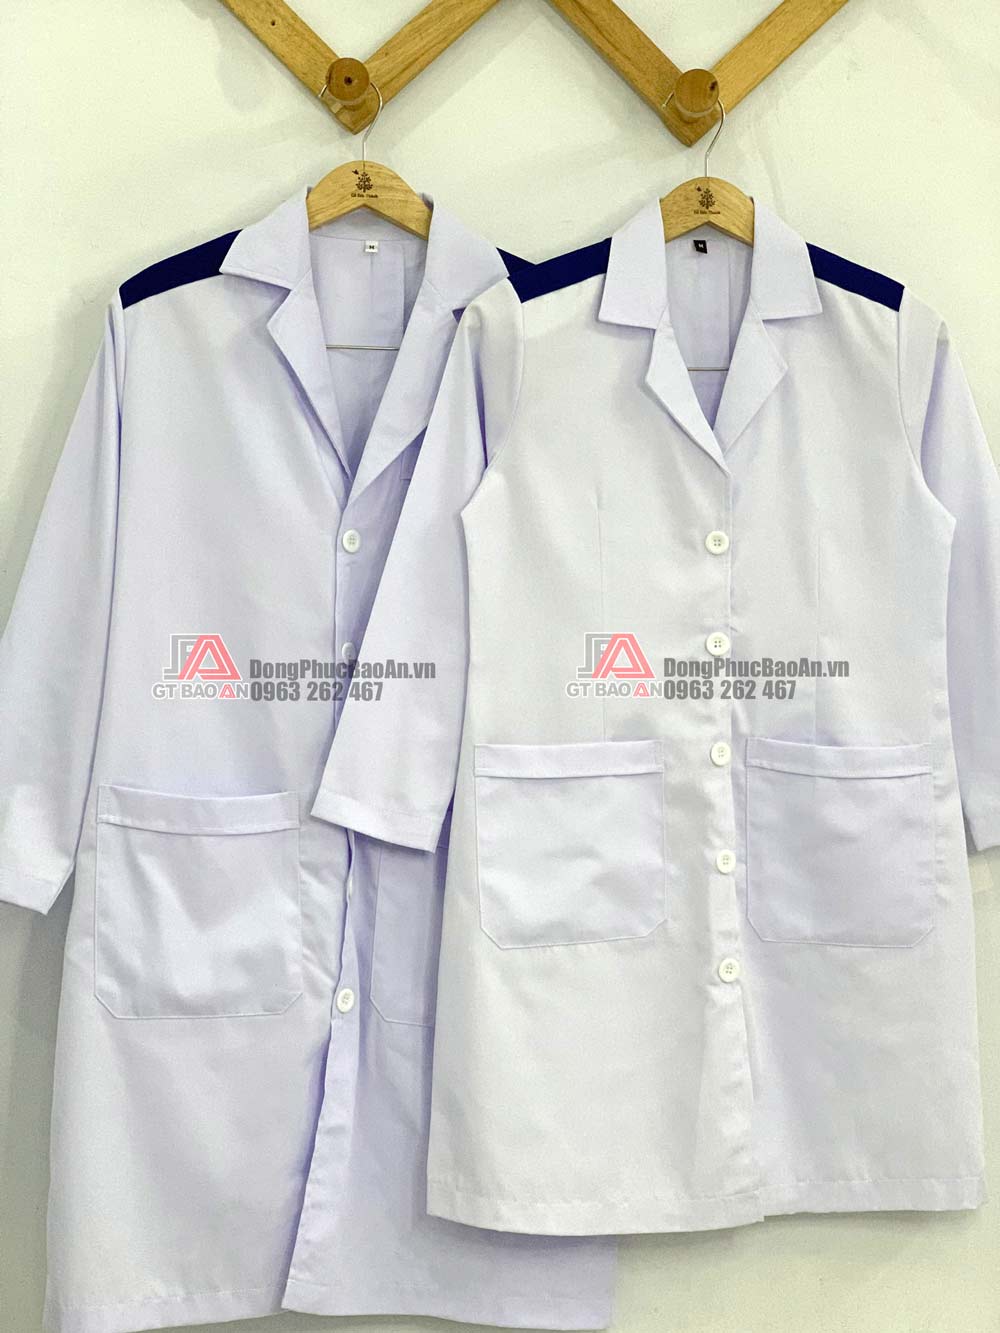 Có sẵn] Mẫu áo blouse trắng dược sĩ tay ngắn Cotton Hàn cao cấp - May đồng  phục bảo hộ - Xưởng may đồ bảo hộ